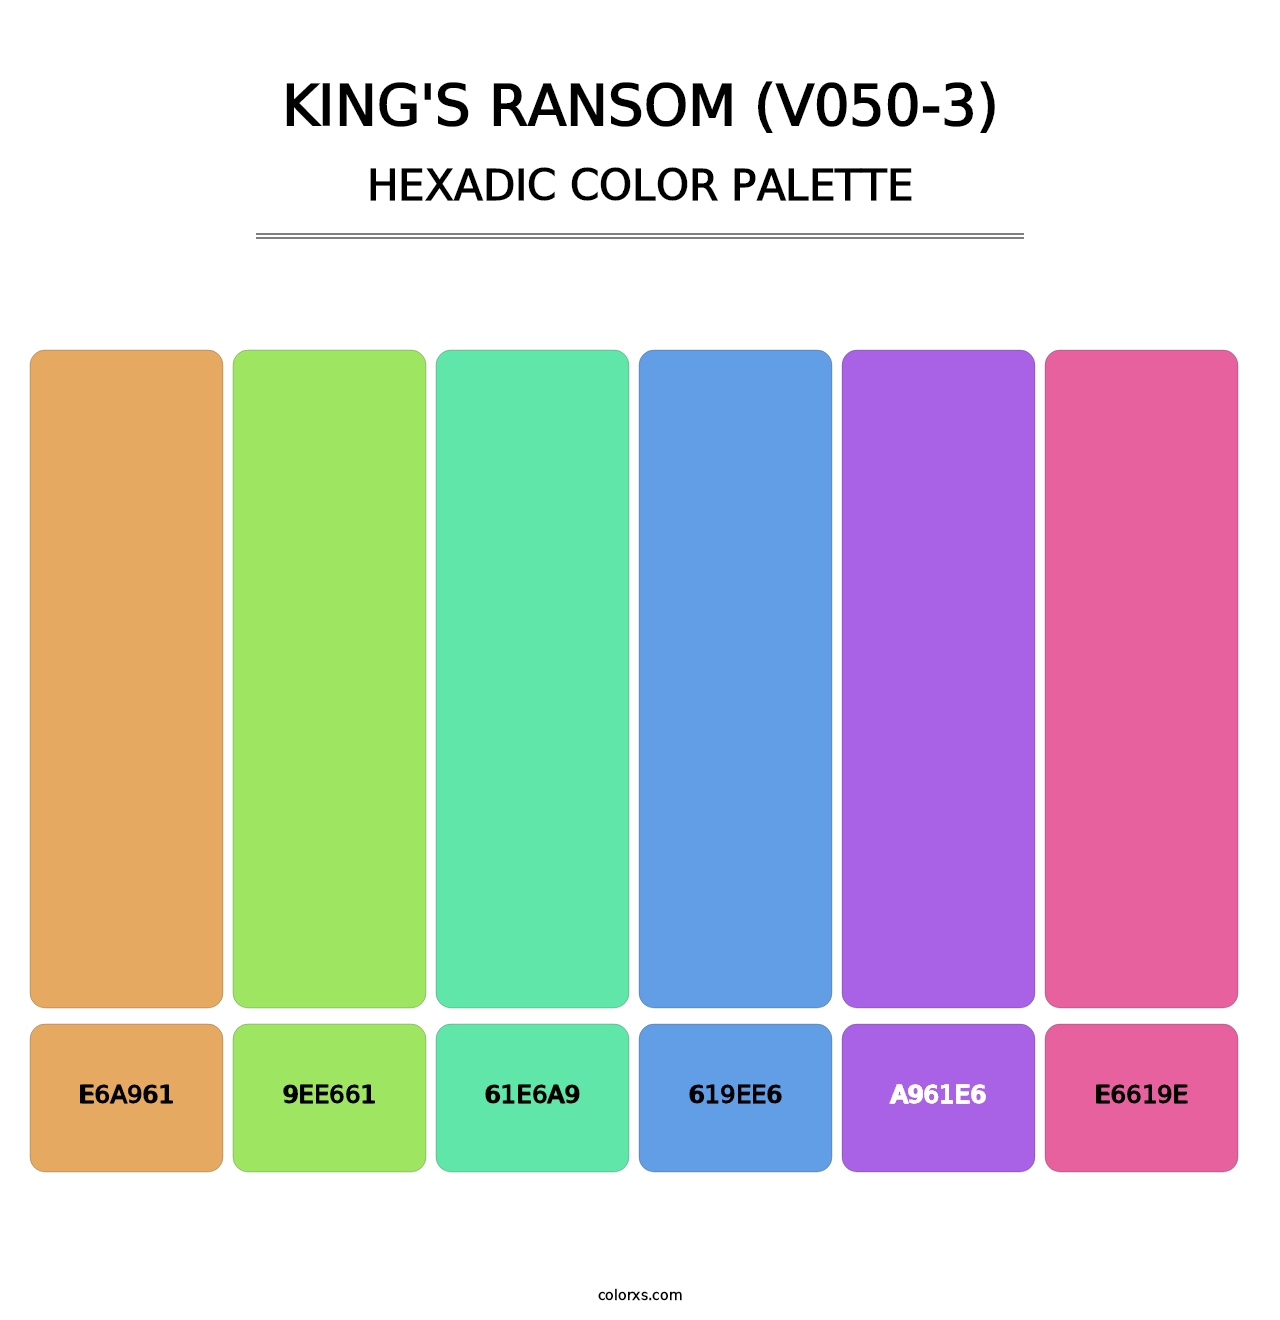 King's Ransom (V050-3) - Hexadic Color Palette